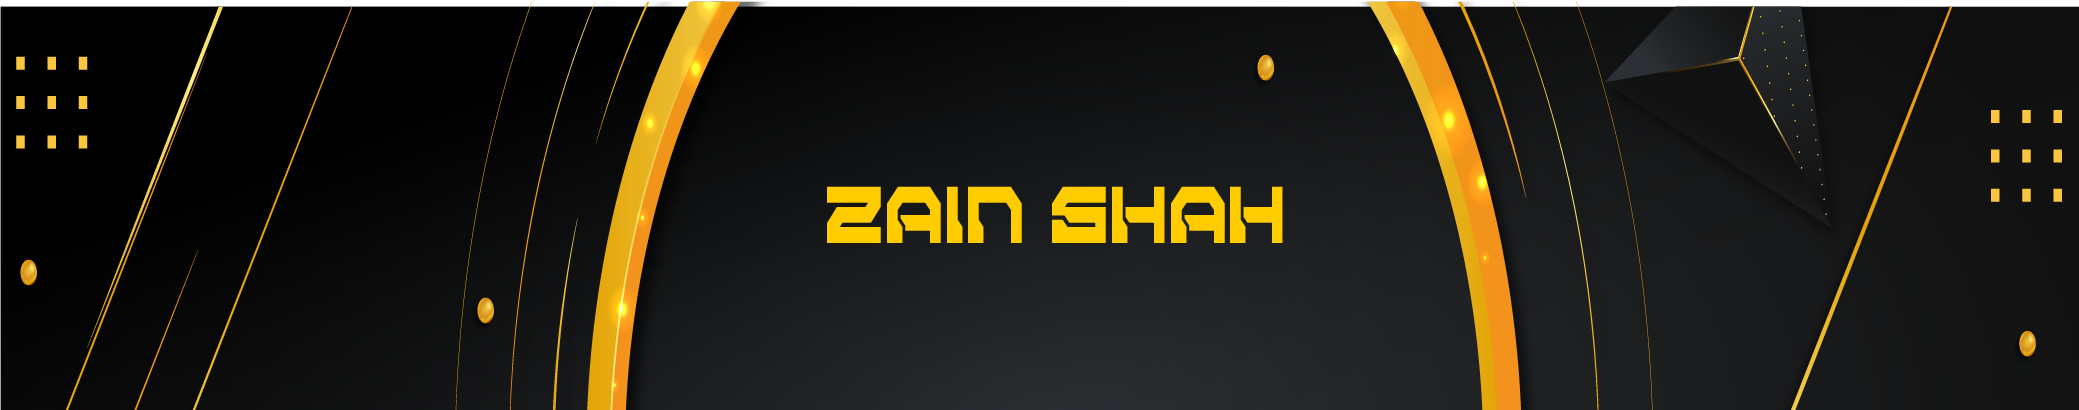 Banner de perfil de Zain Shah